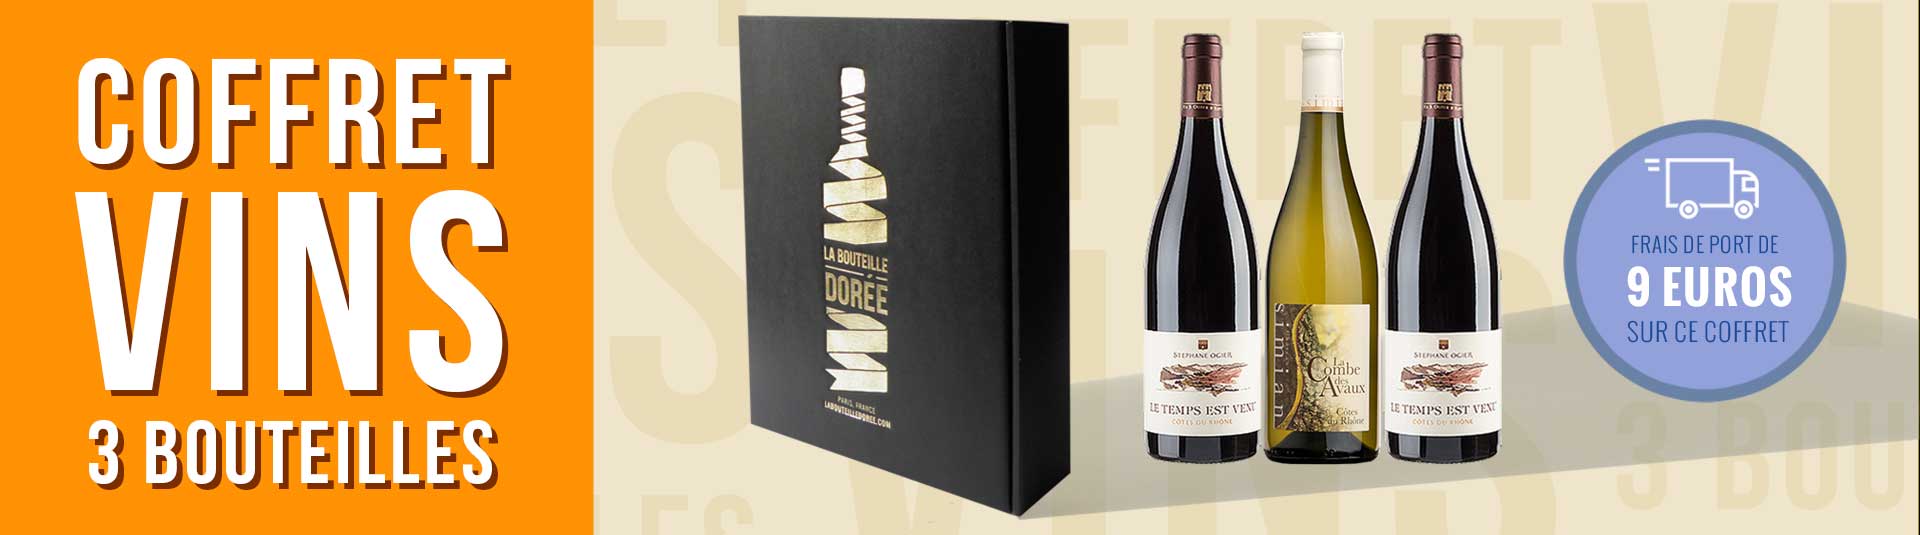 coffret vin Rhône 3 bouteilles cépages Roussanne, Grenache Noir et Grenache Blanc